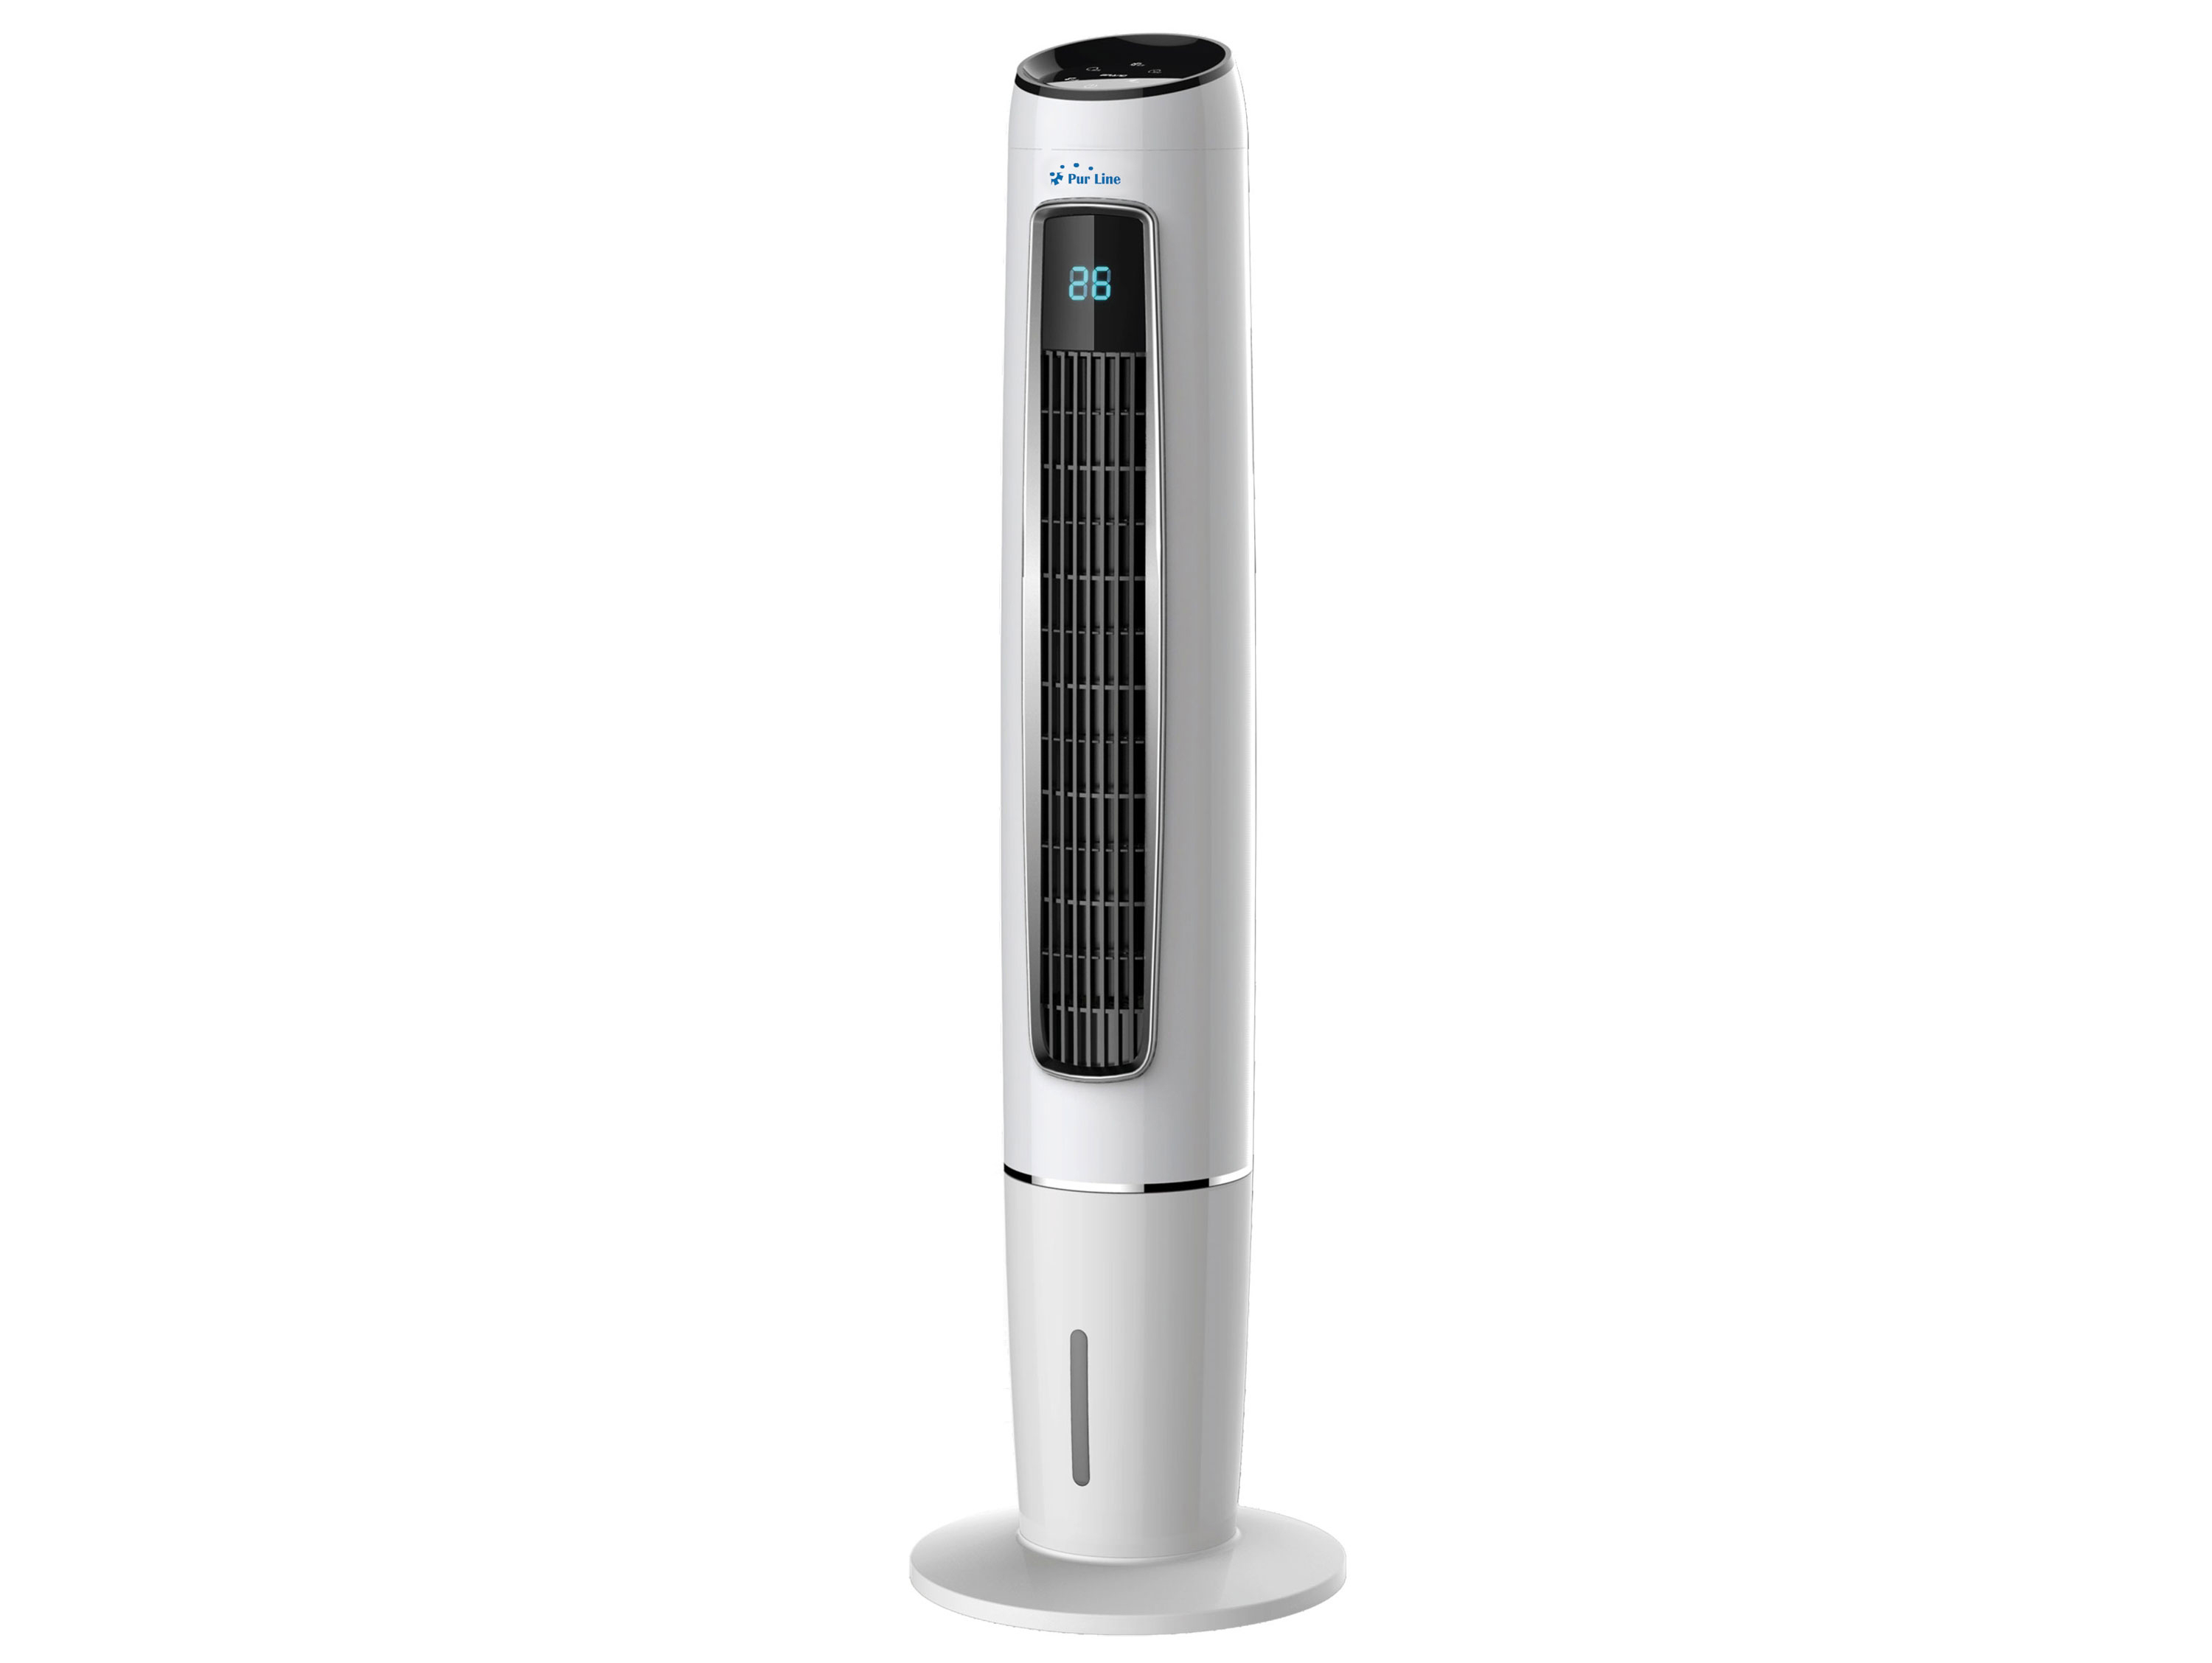 Climatizador Evaporativo Ventilador humidificador purificador de aire torre 65w mando distancia para superficies 15m2 digital purline. pantalla movimiento oscilante bajo consumo 65 temporizador 7 75